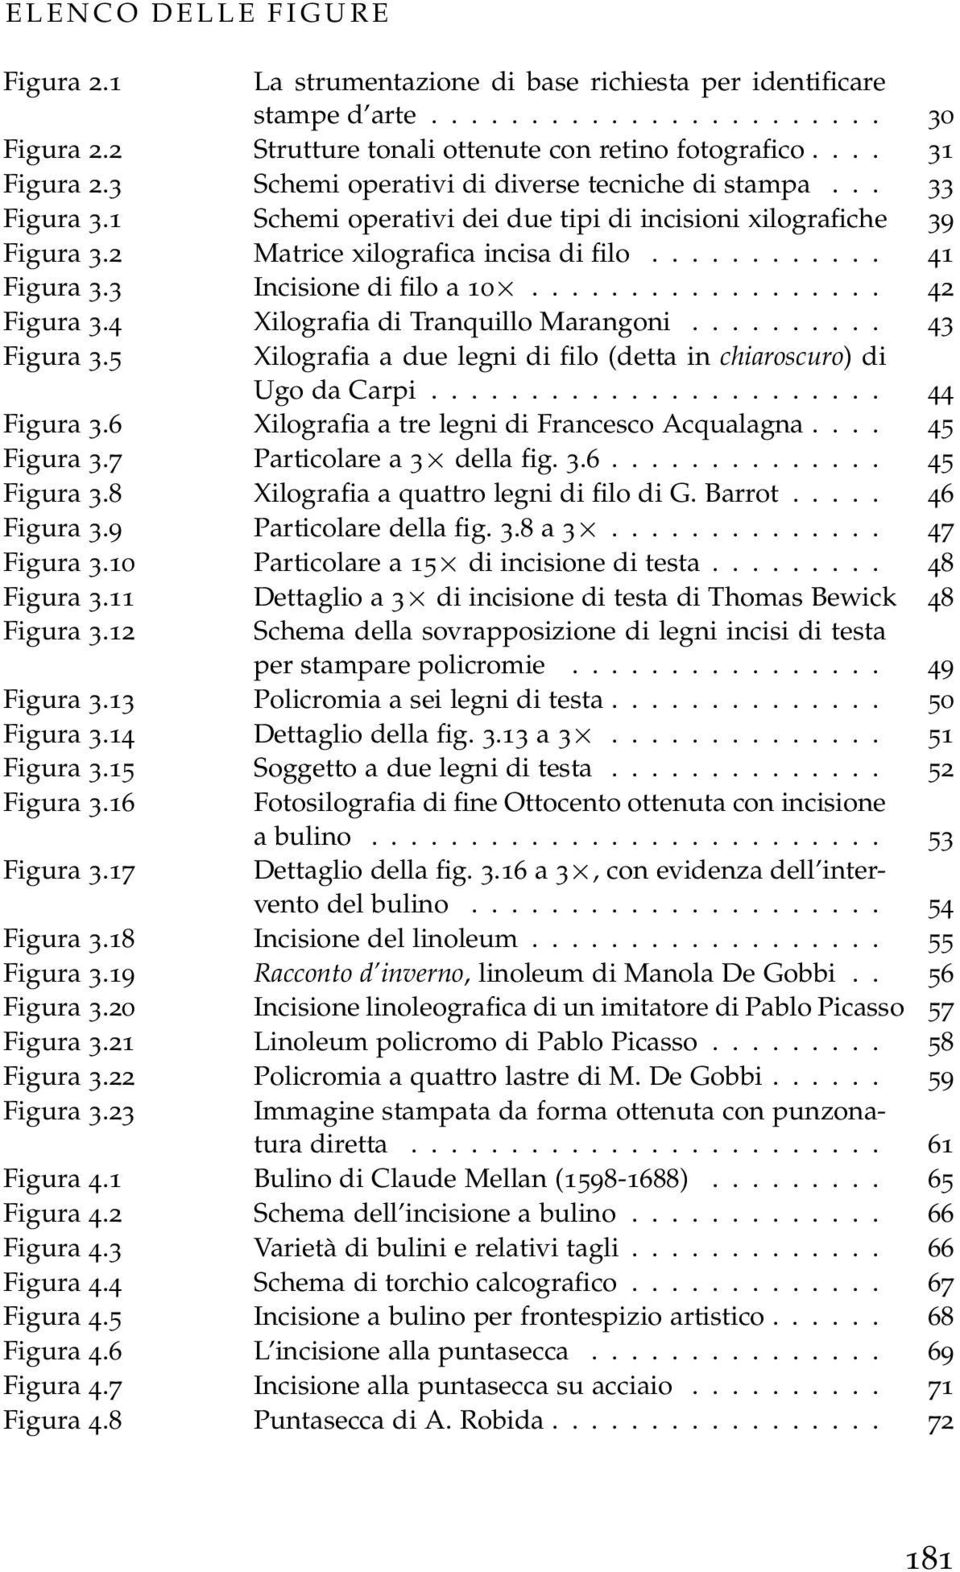 3 Incisione di filo a 10... 42 Figura 3.4 Xilografia di Tranquillo Marangoni.......... 43 Figura 3.5 Xilografia a due legni di filo (detta in chiaroscuro) di Ugo da Carpi....................... 44 Figura 3.